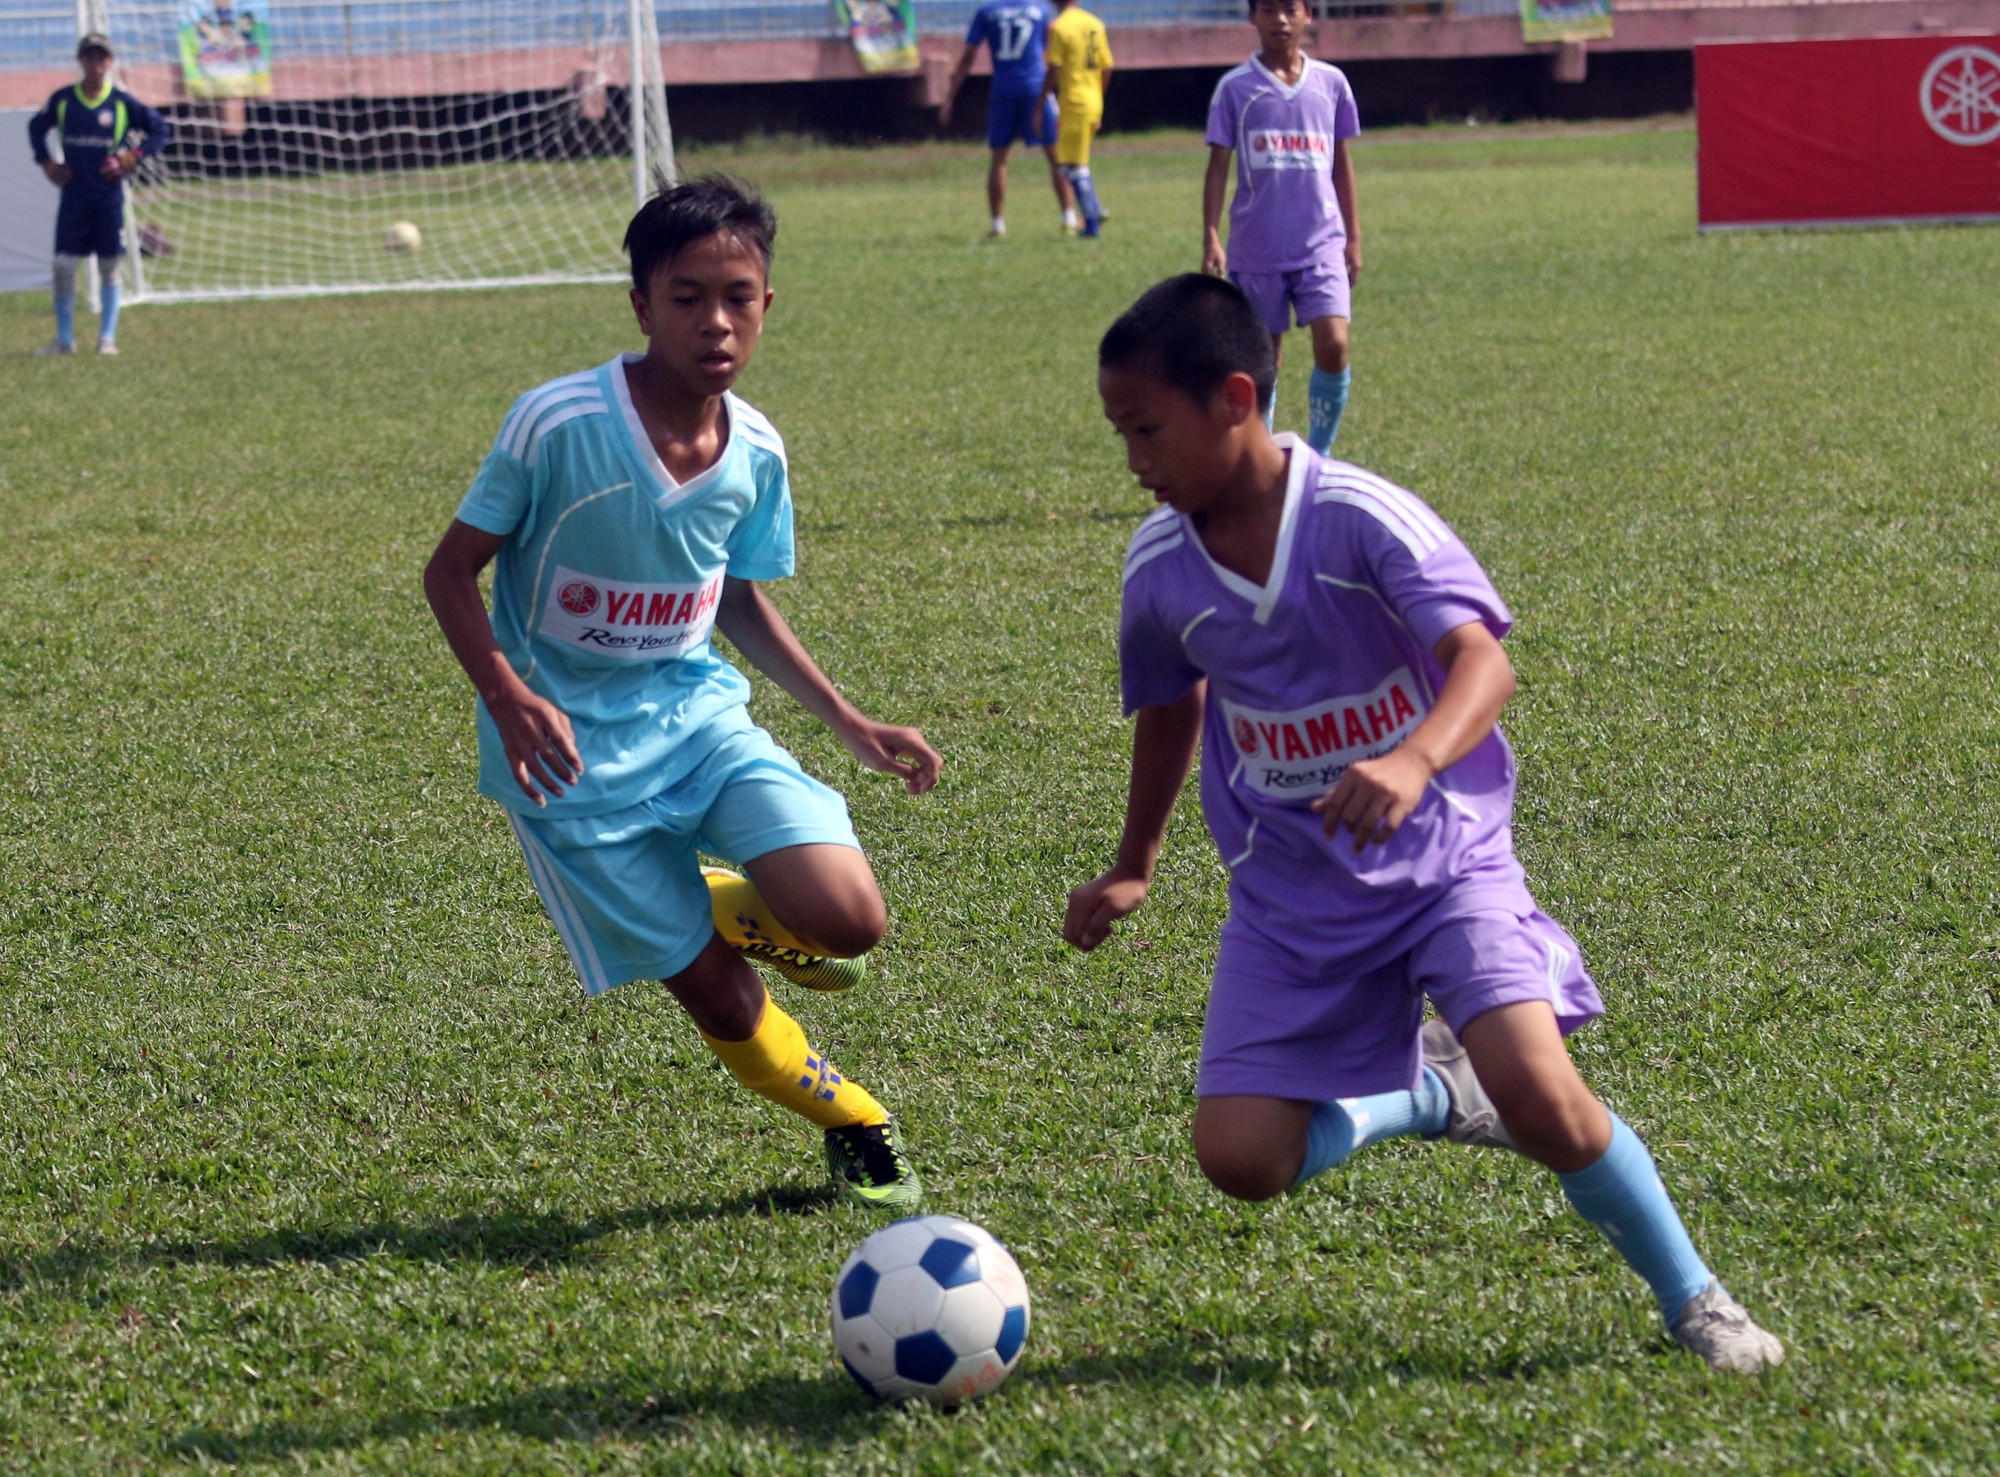 Trường Trần Hưng Đạo đã thắng 7-1 trước trường Mai Xuân Thưởng.